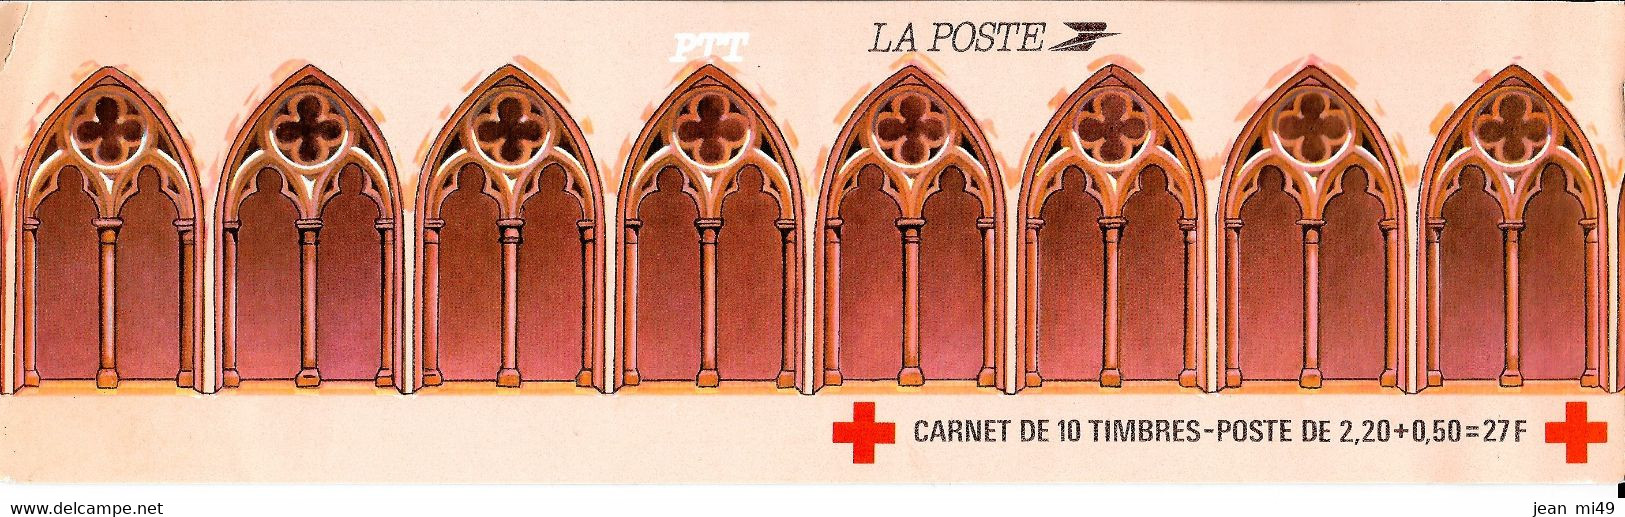 CARNET CROIX ROUGE - Retable D'issenhein COLMAR - 2fr 20 + 50 C - 1985  Y&T 2034 ( Valeur Facial) - Red Cross